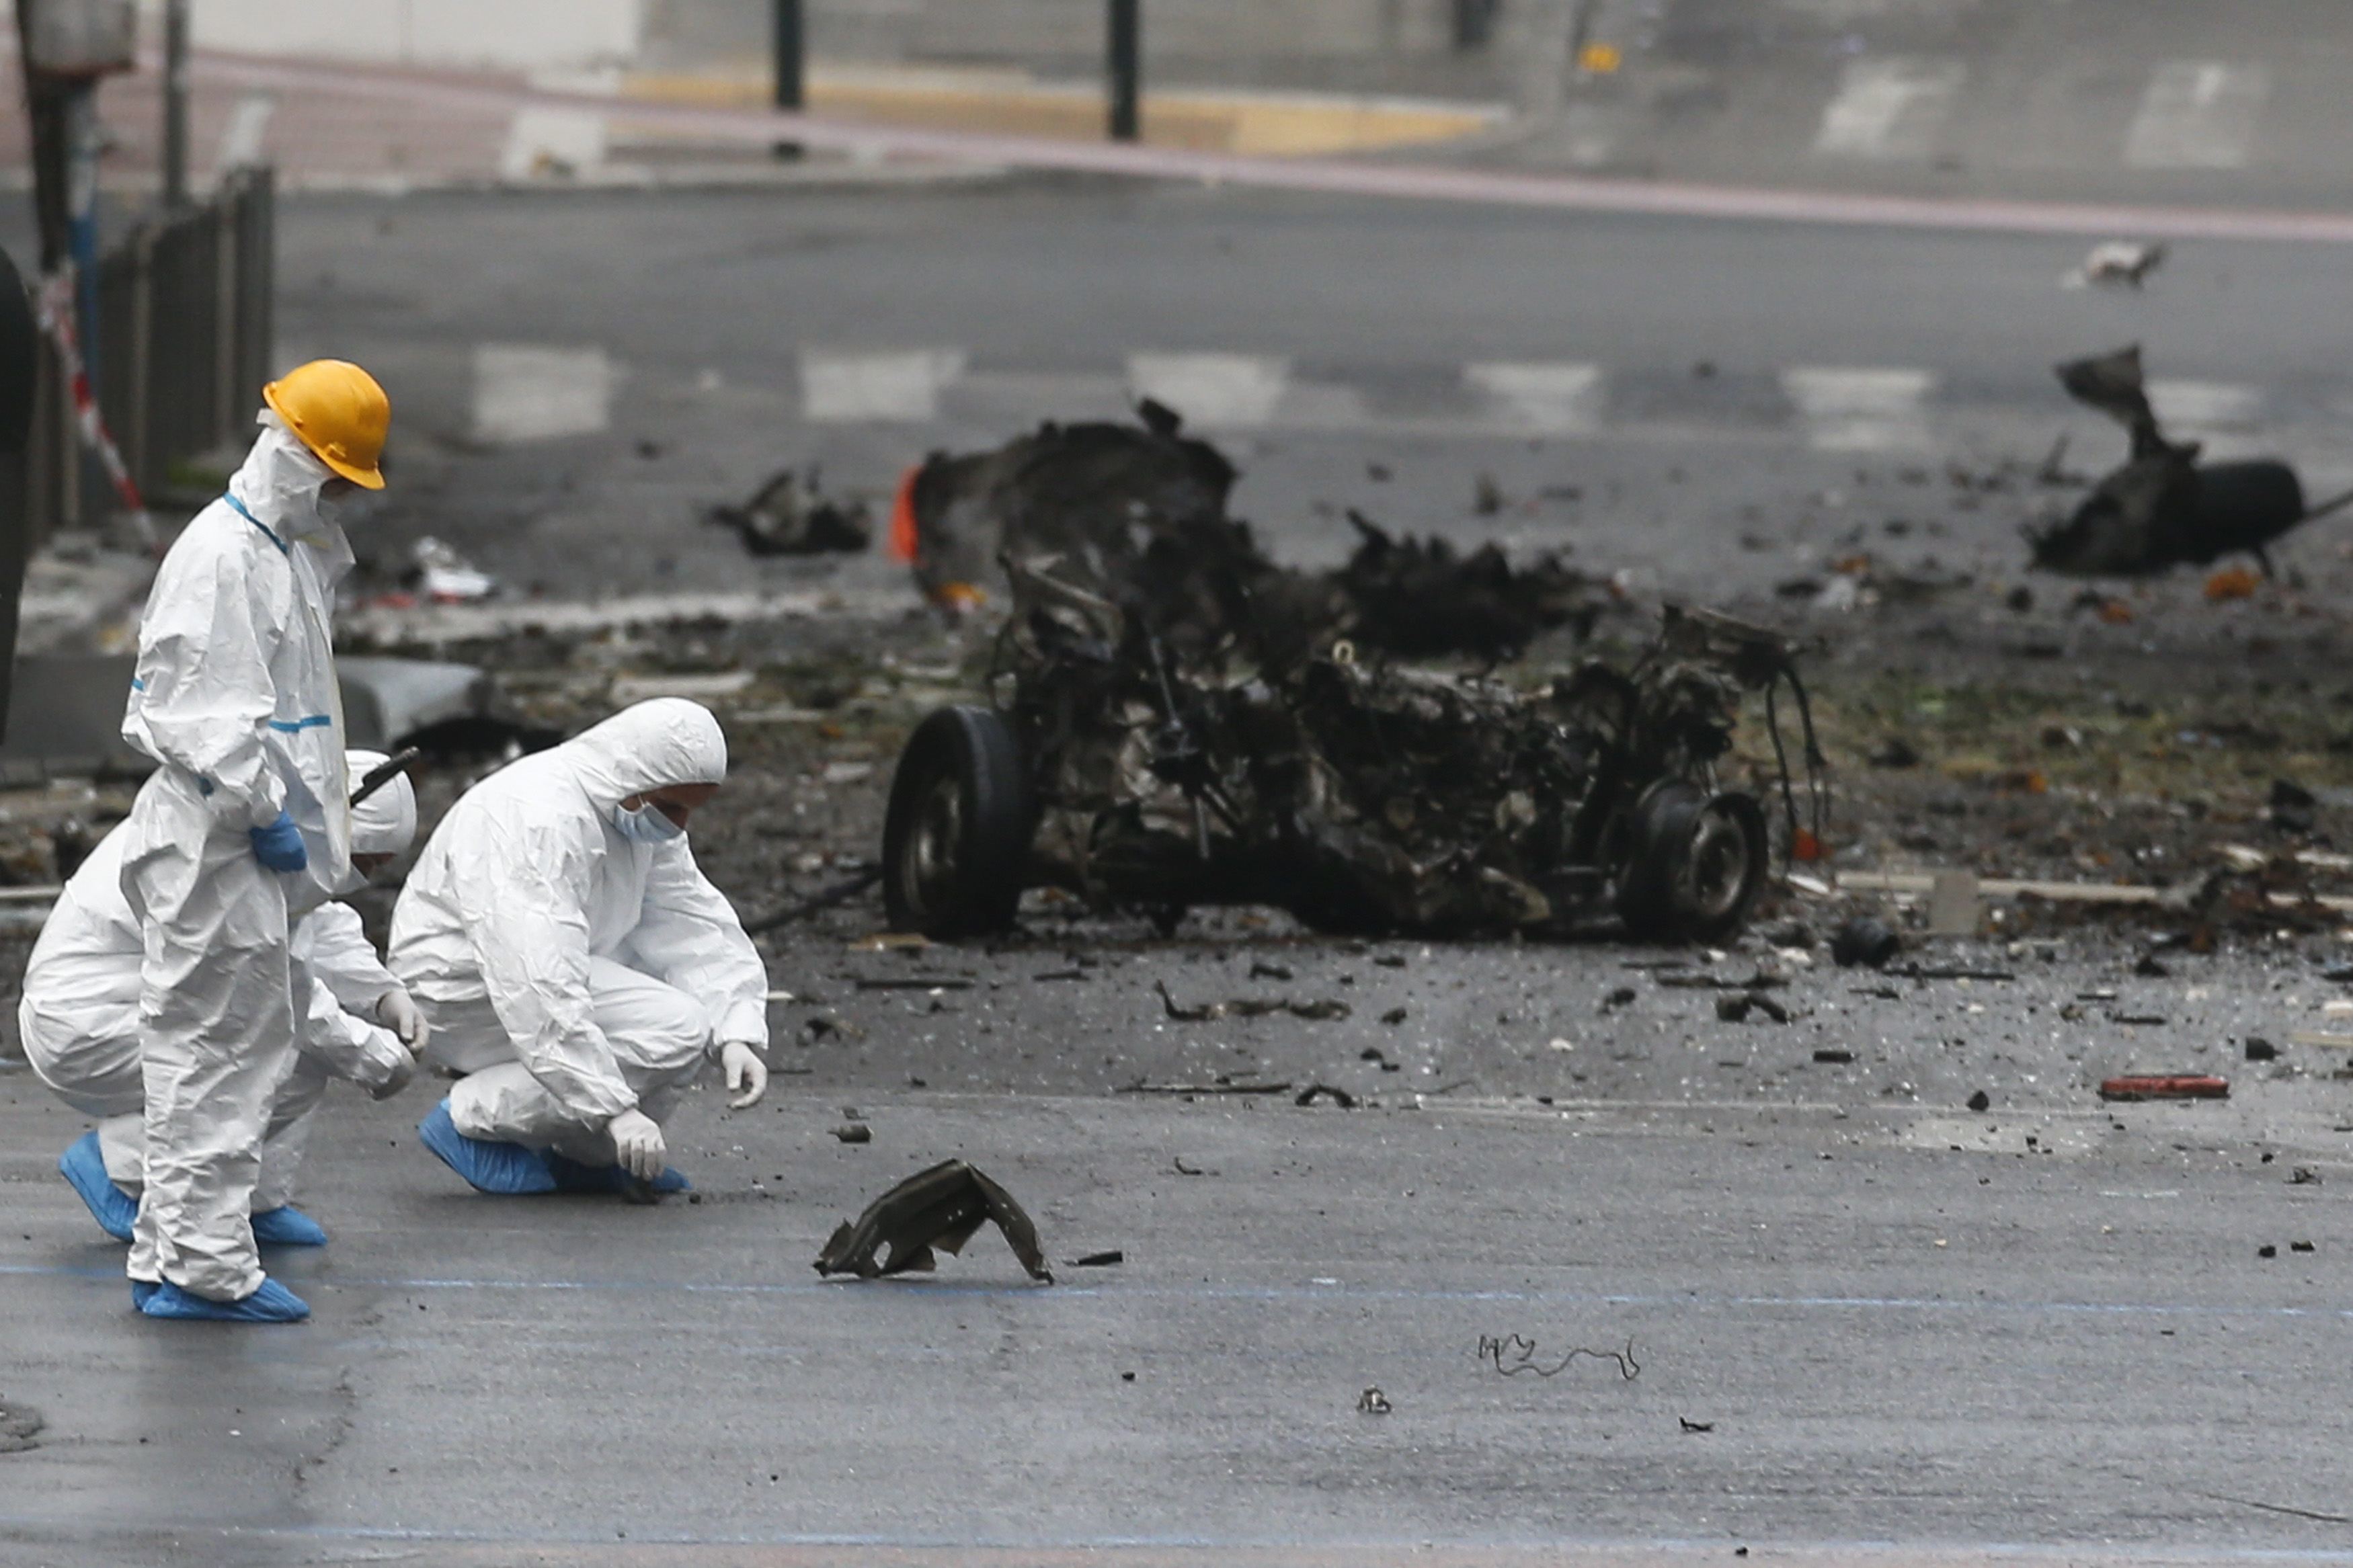 Γερμανικά ΜΜΕ: Έκρηξη στην Αθήνα λίγο πριν την επίσκεψη Μέρκελ